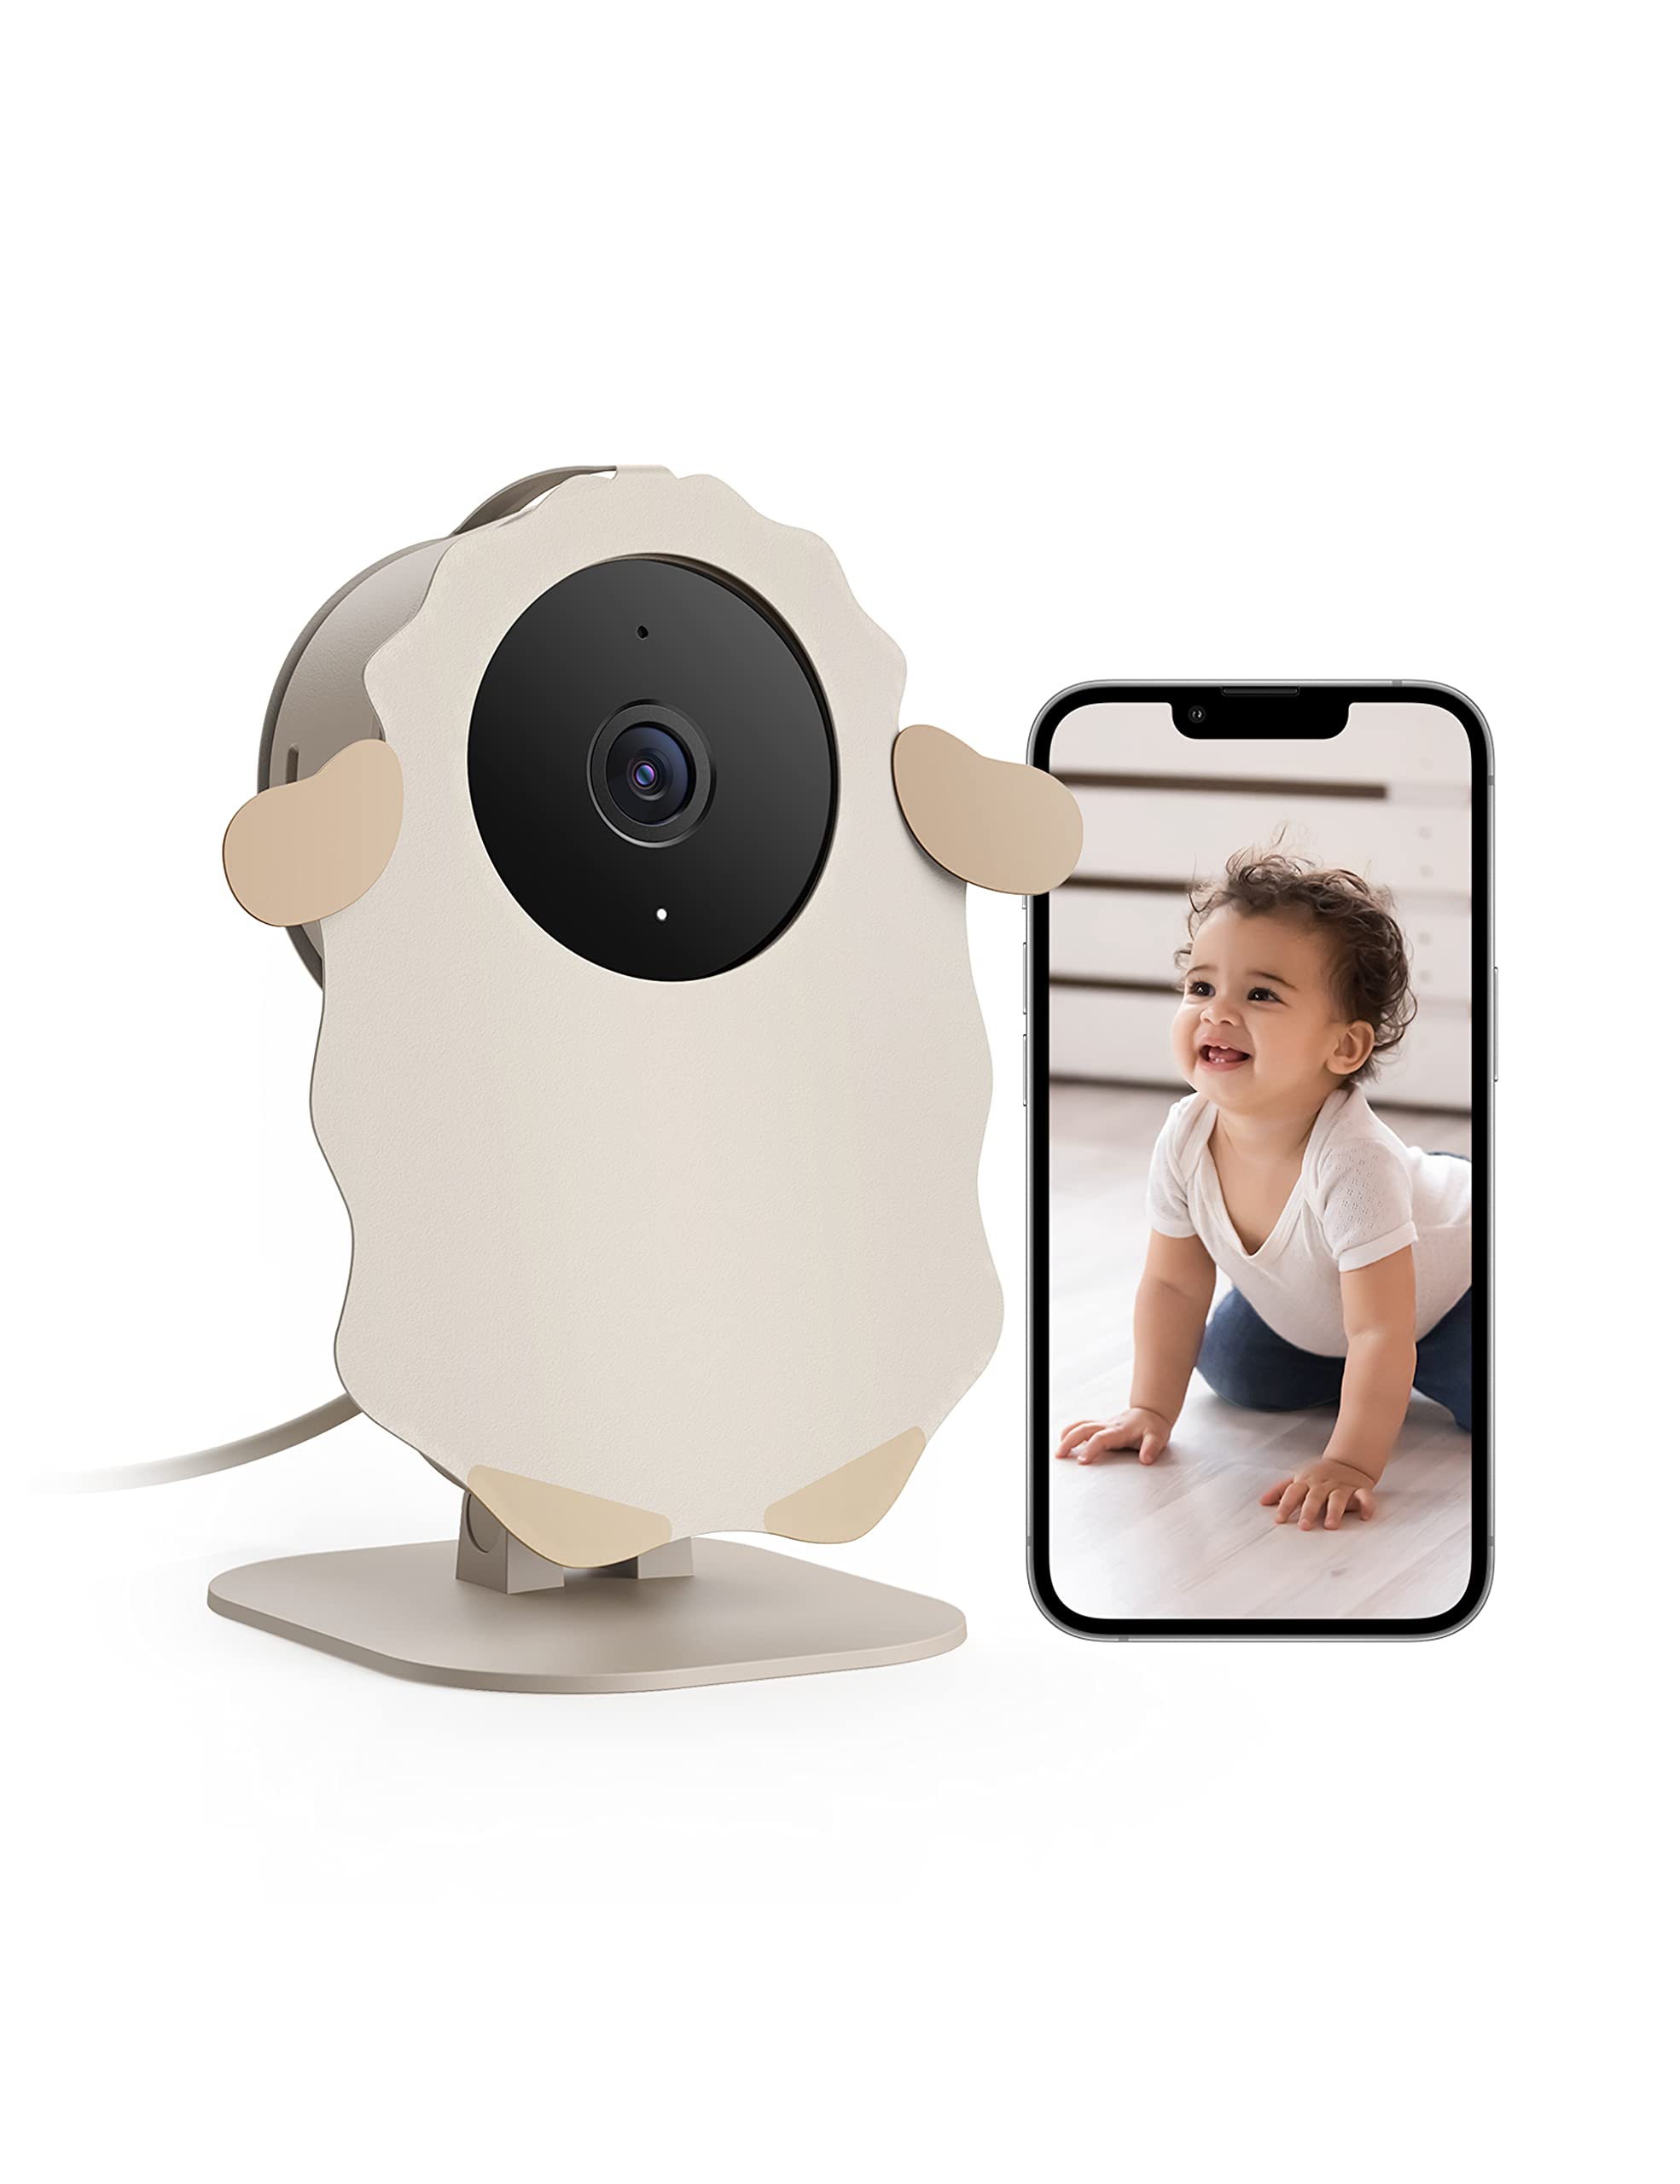 nooie Babyphone Kamera, 1080P Baby IP-Kamera, Videomonitor für Babys mit Kamera und App, bidirektionales Audio mit Gegensprechanlage, Nachtsicht, Bewegungserkennung und Sound